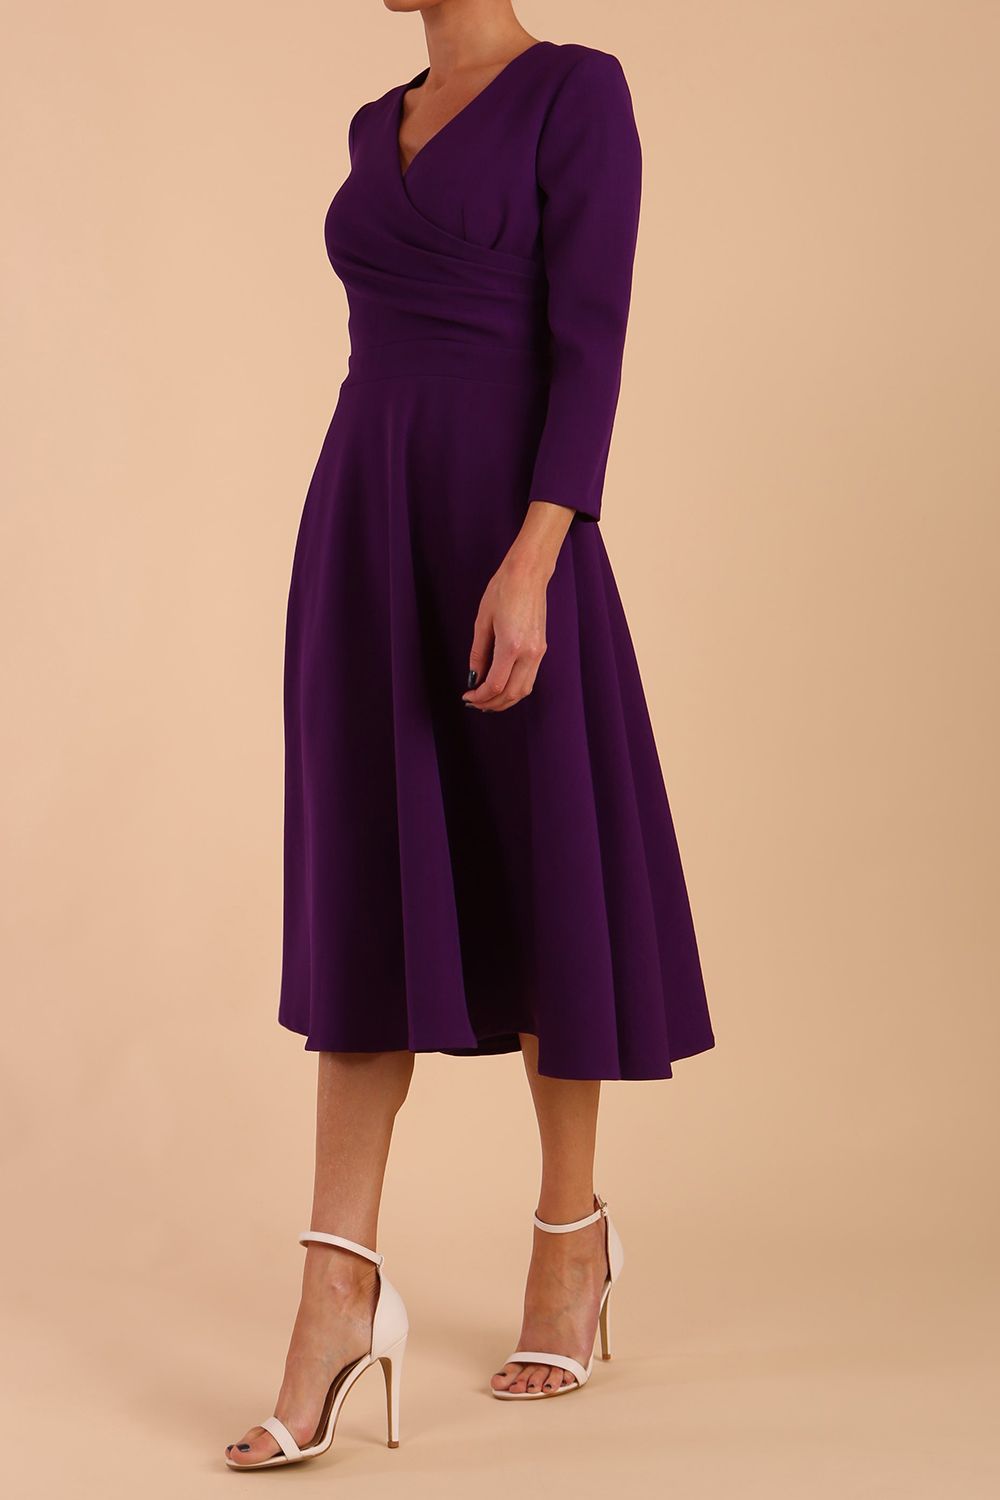 Model wearing diva catwalk Kate 3/4 Length Sleeve A-Line Swing Dress in Deep Purple front side